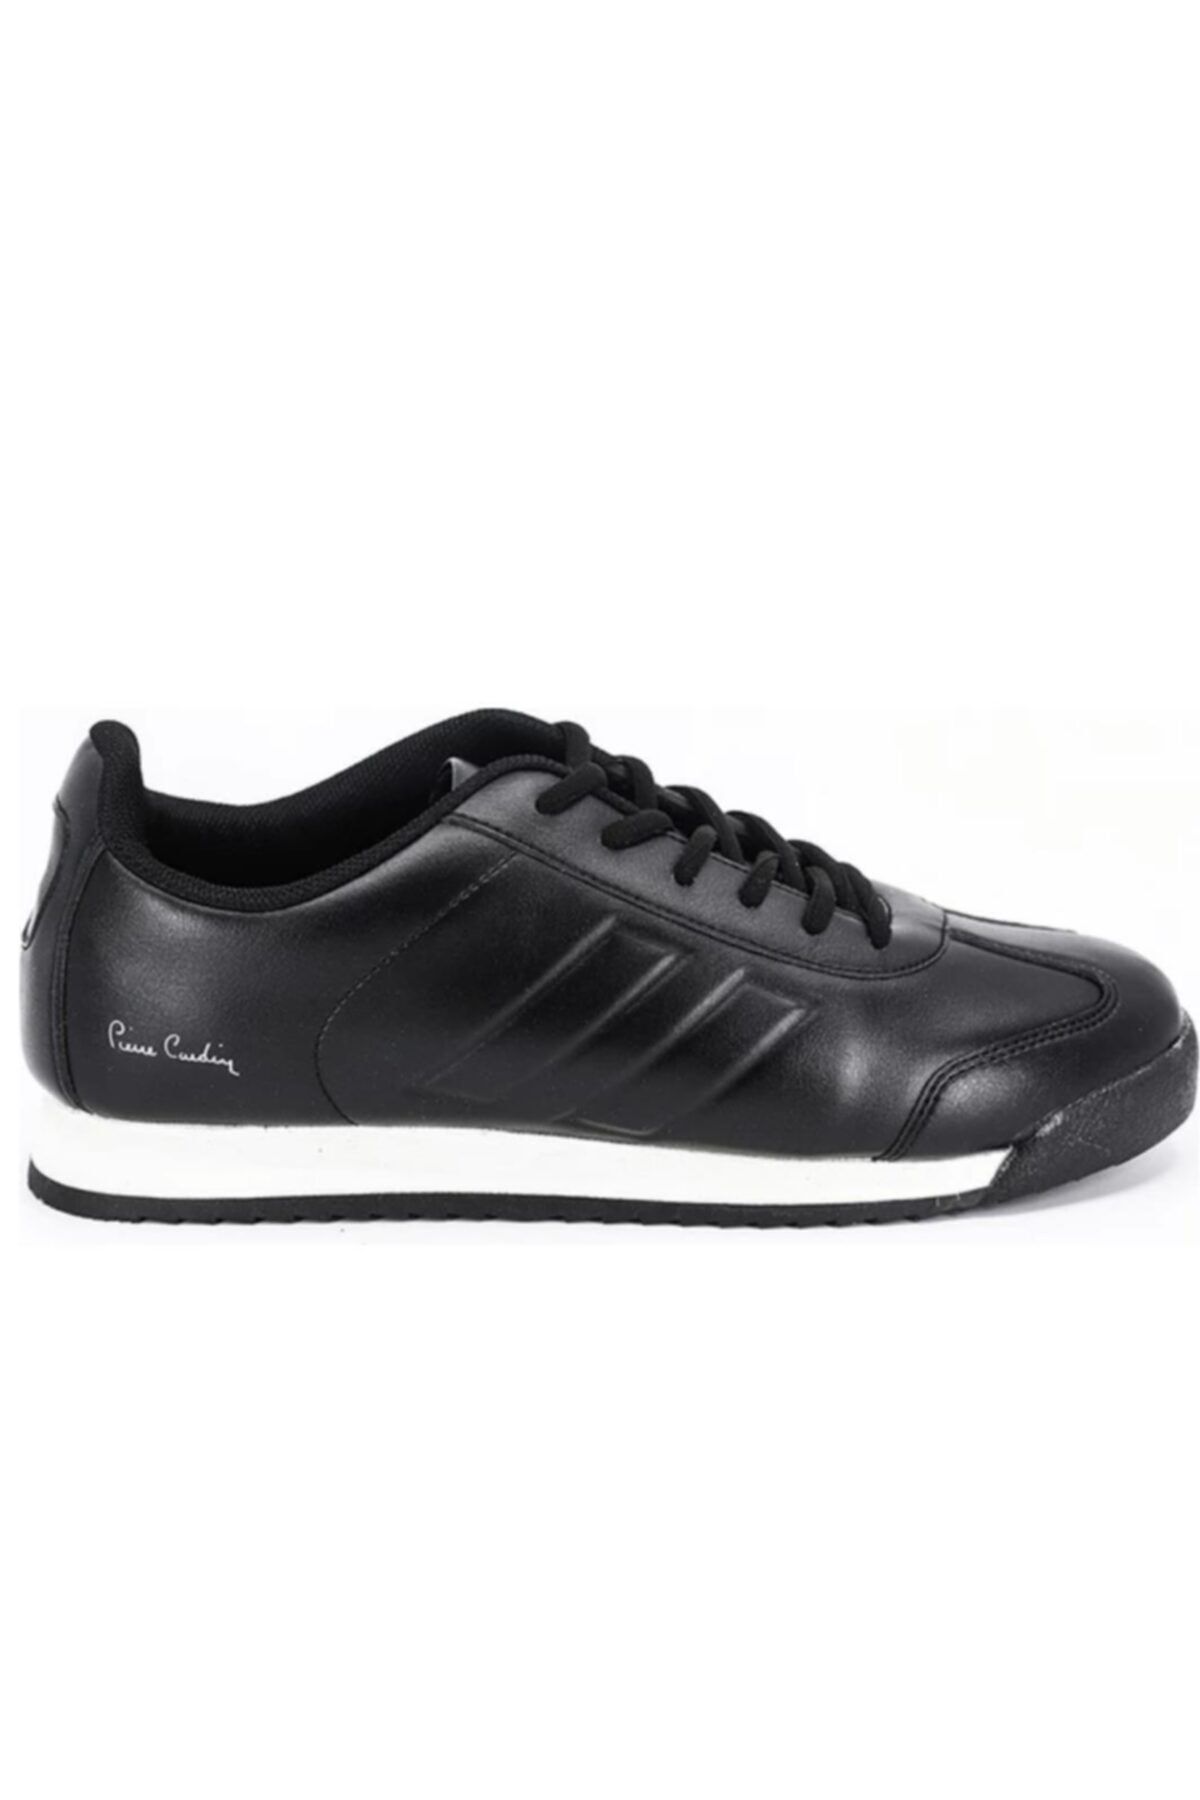 Pierre Cardin Erkek Siyah Sneaker Spor Ayakkabı 30484